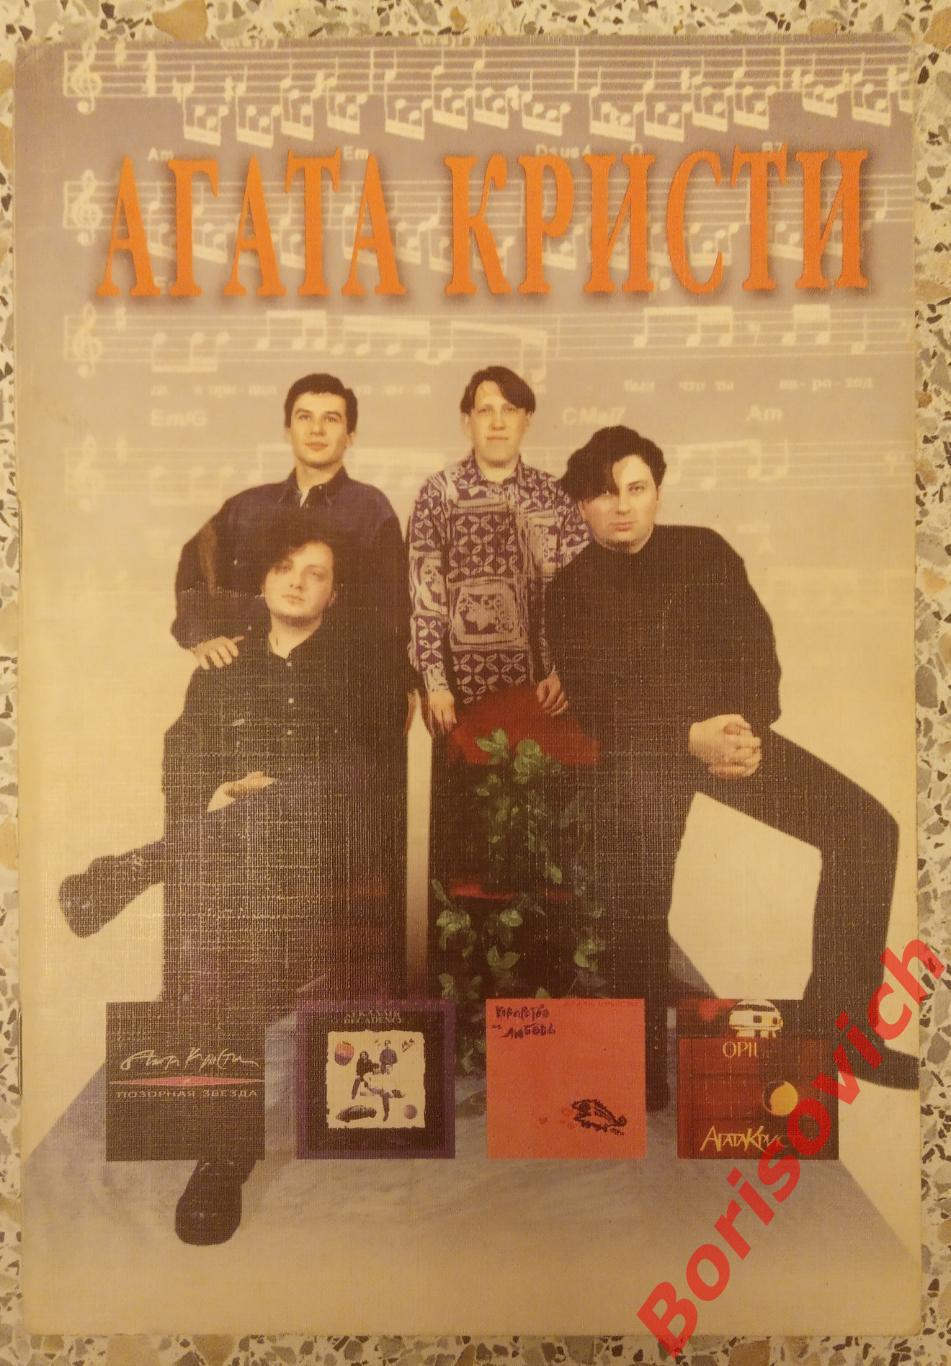 !!!!!!! Песни Рок-группы АГАТА КРИСТИ Москва 1996 г 64 страницы Тираж 2500 экз